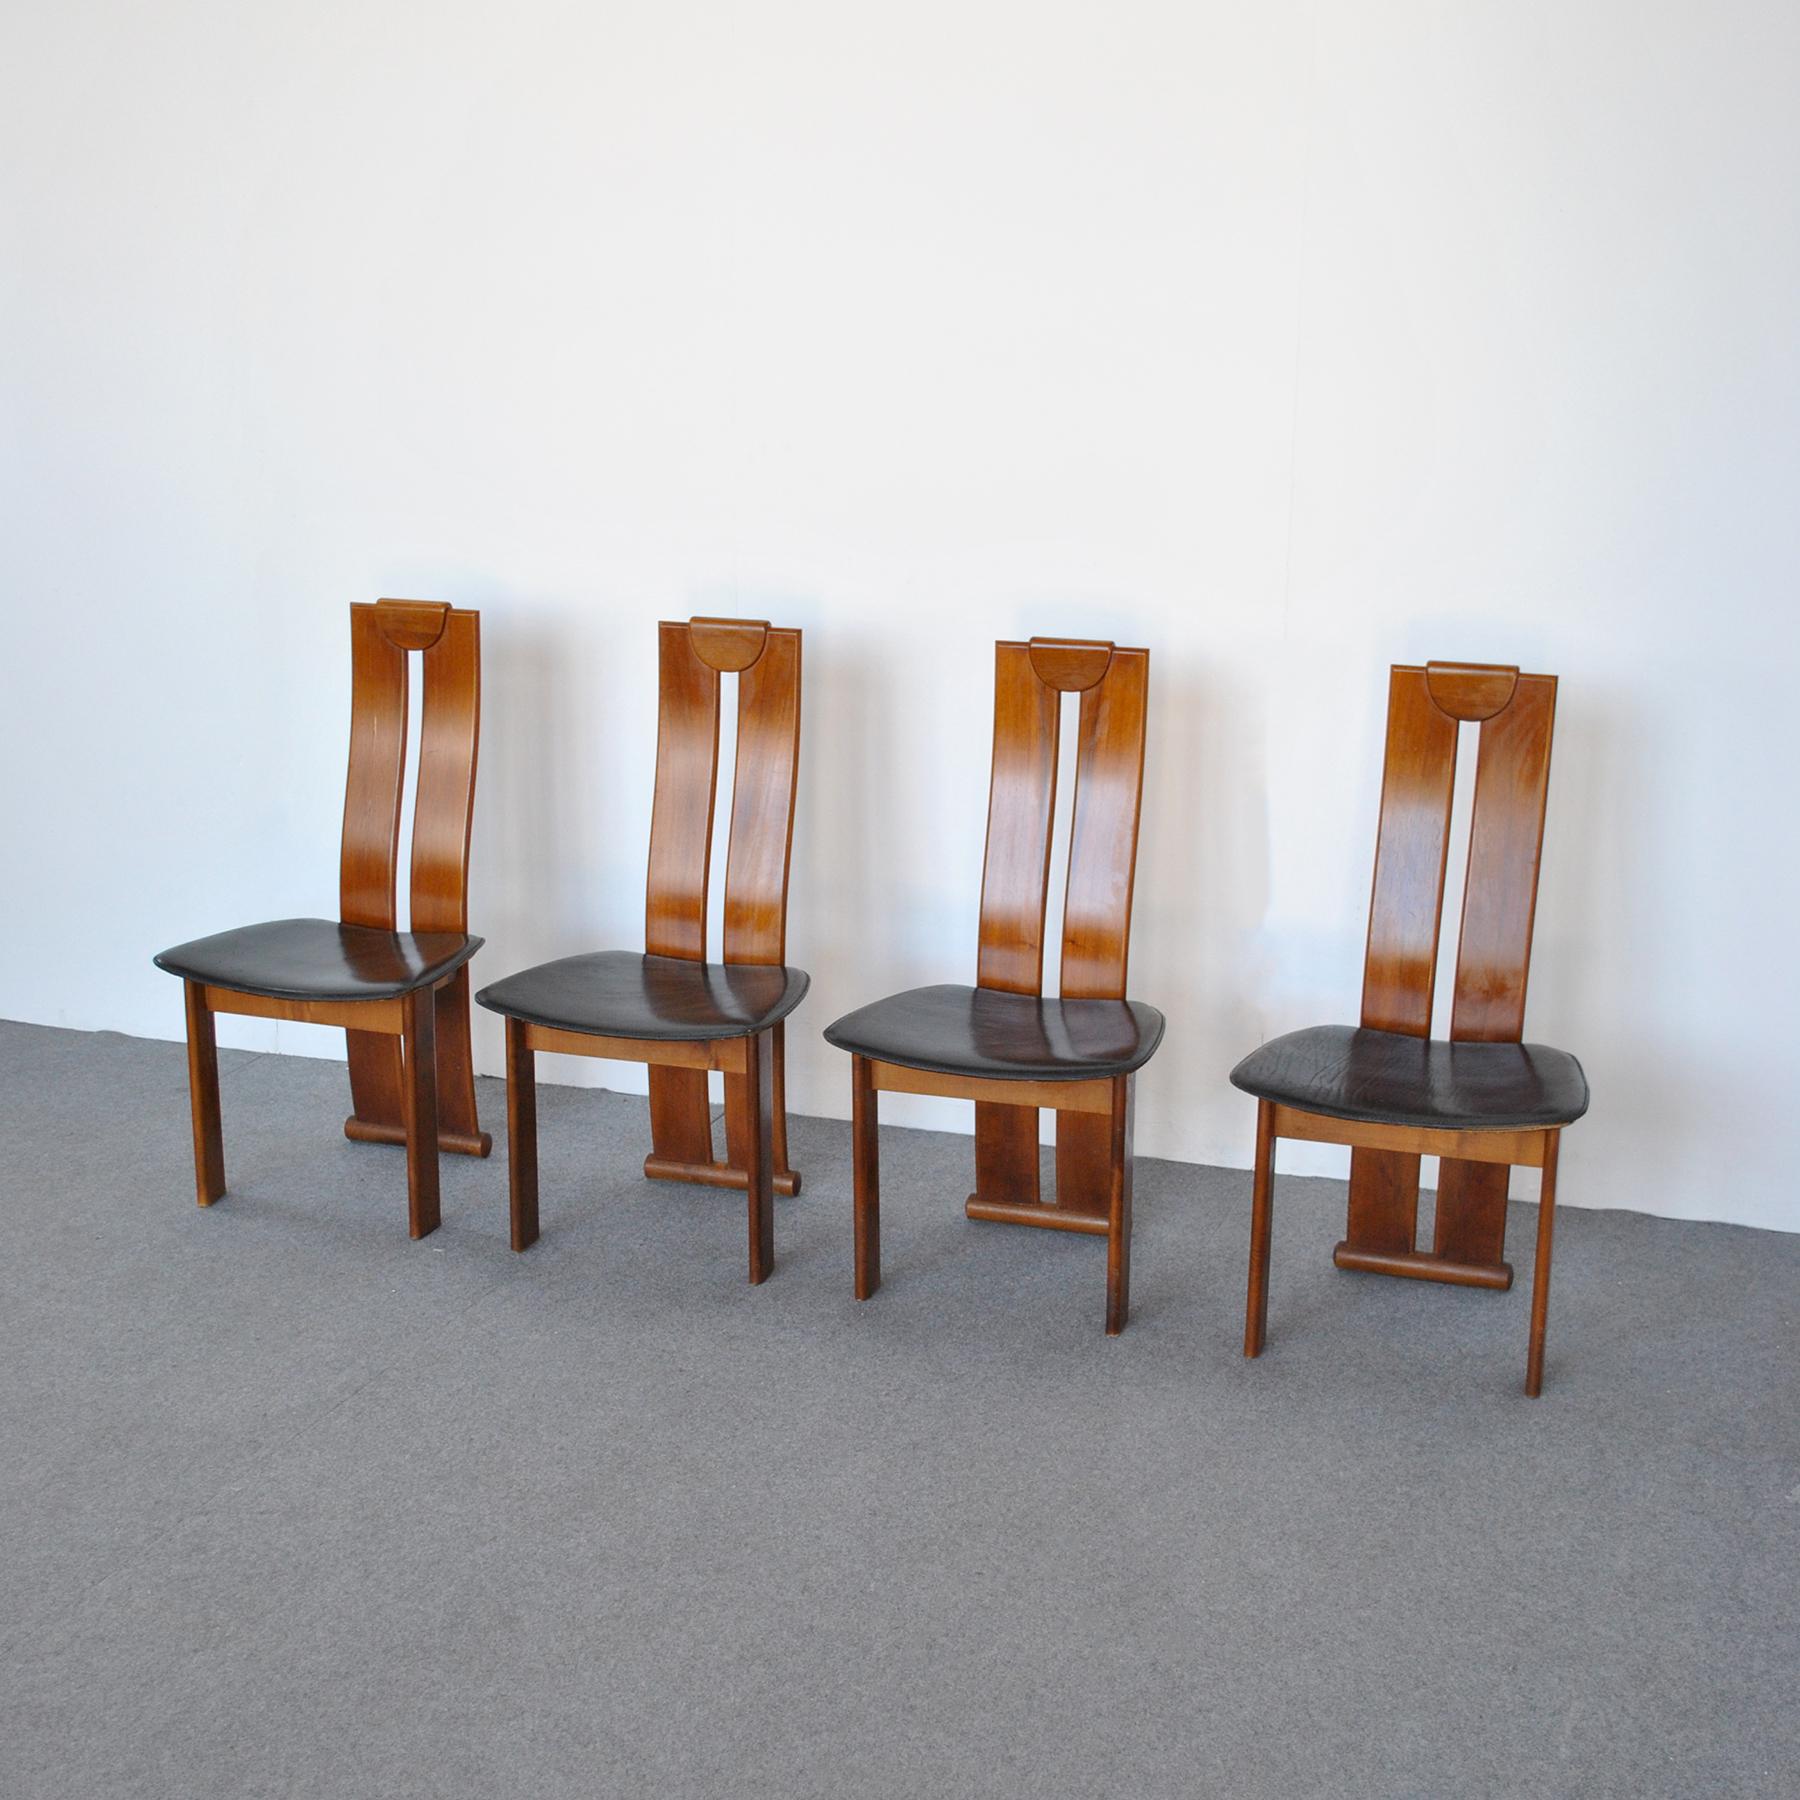 Ensemble de quatre chaises en bois de noyer ; siège en cuir du designer Afra & Tobia Scarpa des années 70.
Fils de l'architecte et designer Carlo Scarpa, Tobia Scarpa est né à Venise le 1er janvier 1935. Diplômé en 1957 avec sa future épouse et